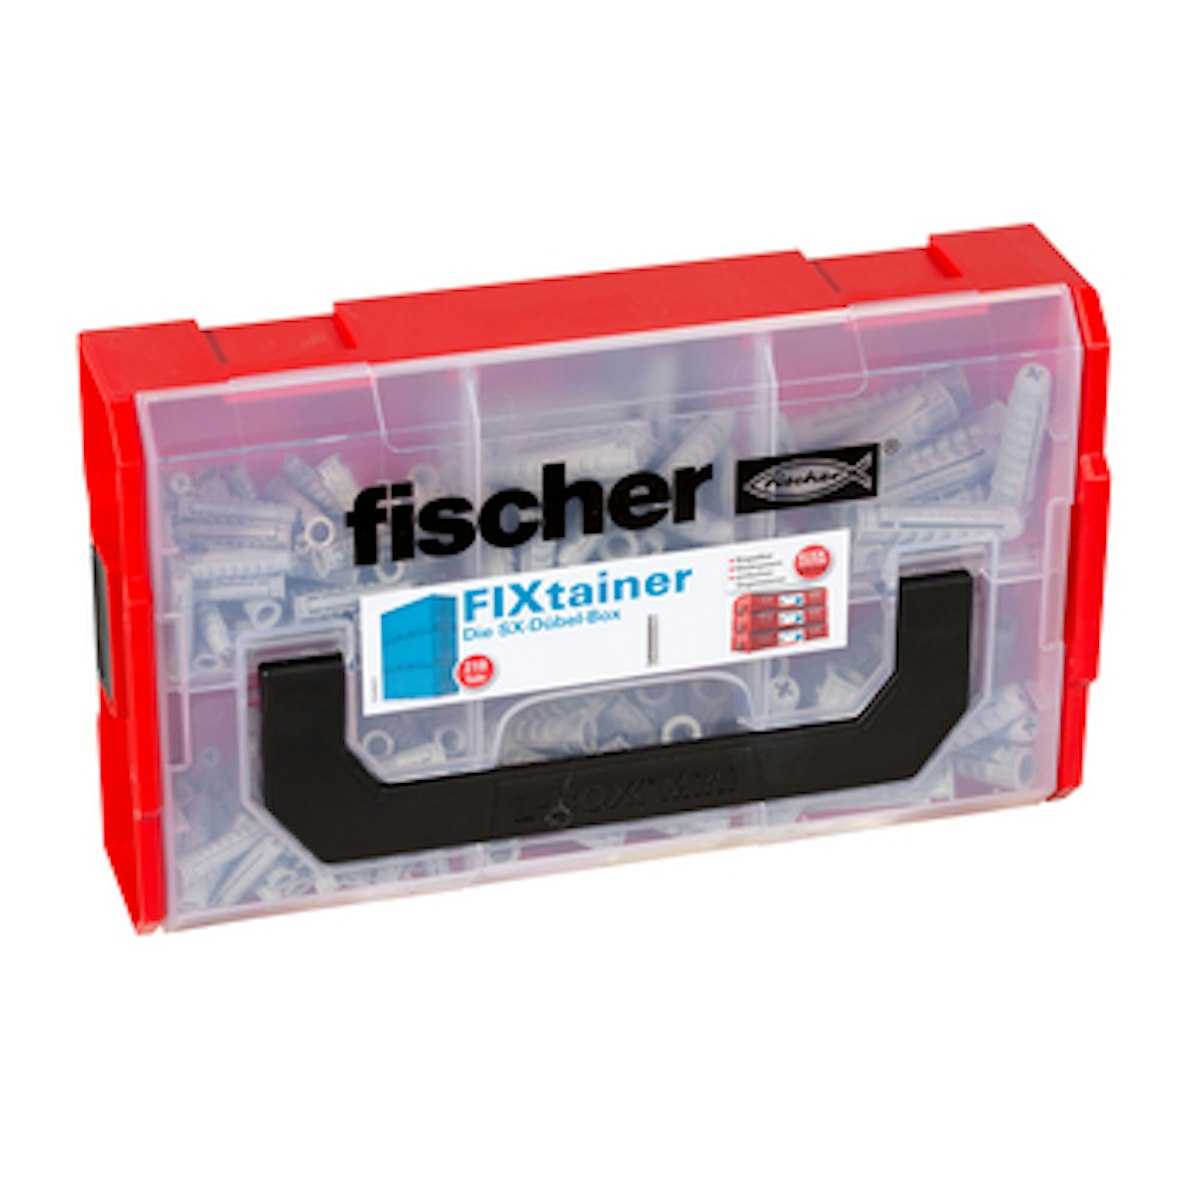 FISCHER Sortimentskasten FIXtainer SX-Dübel von fischerwerke GmbH & Co. KG